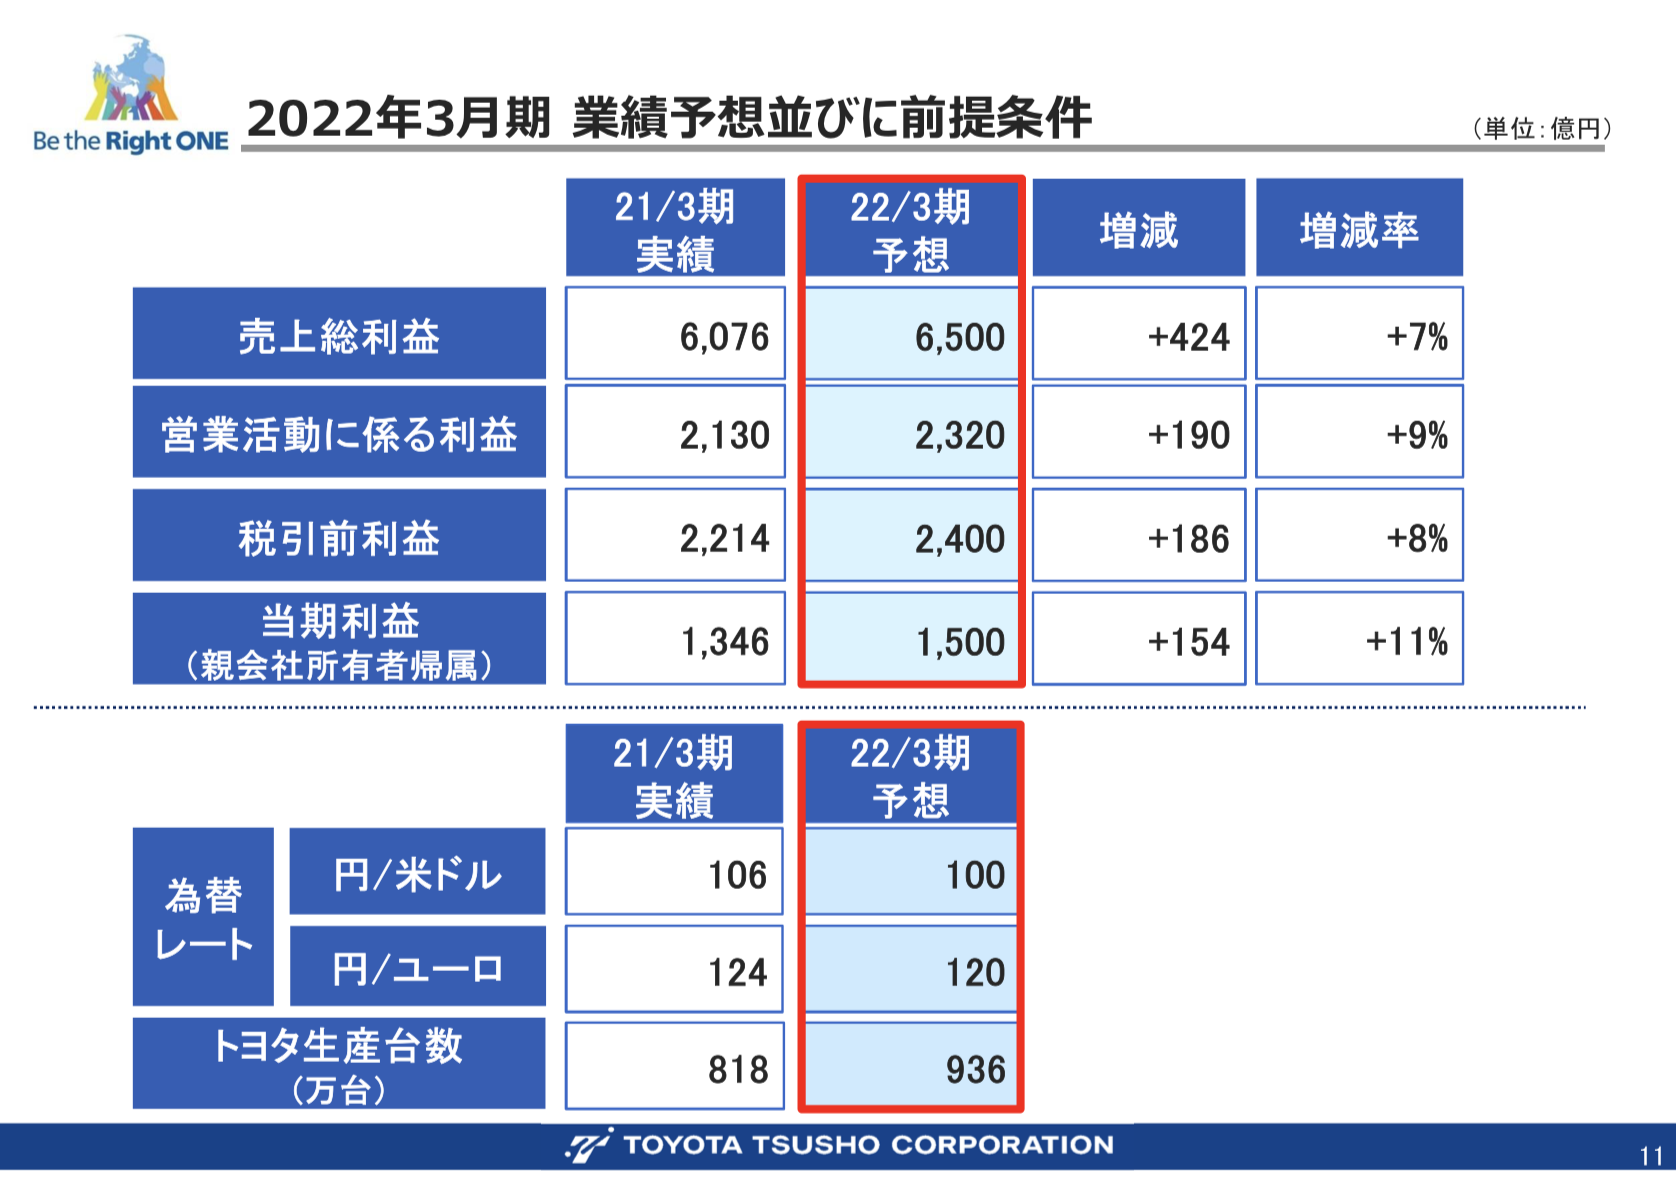 豊田通商株式会社 2021年3月期 連結決算概要及び 2022年3月期 業績予想